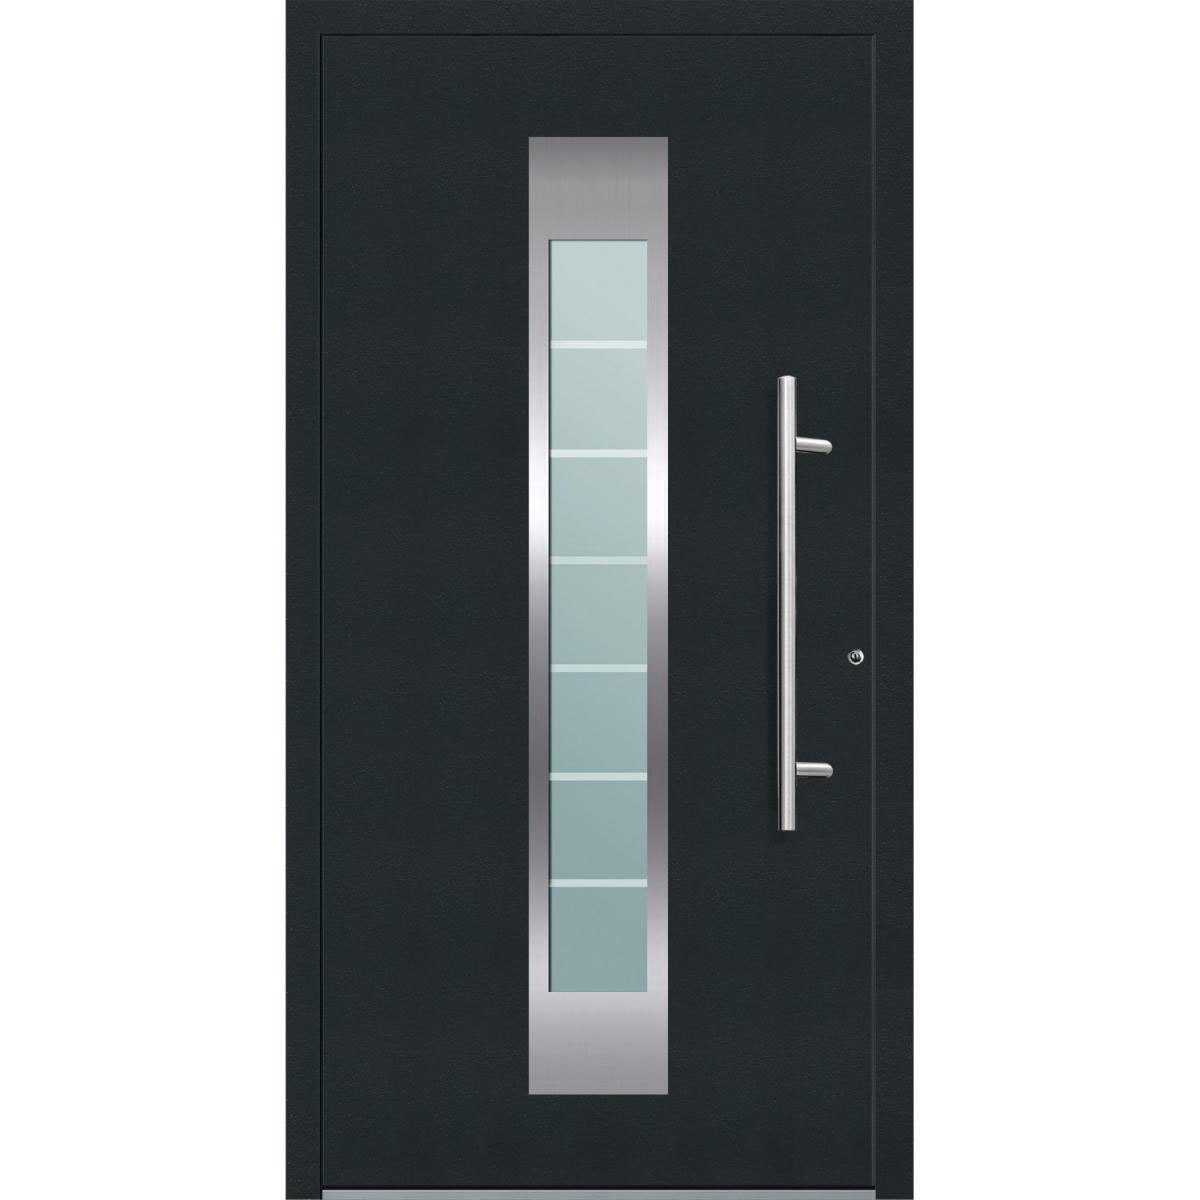 Aluminium Sicherheits-Haustür „Florenz Exklusiv“, 75mm, anthrazit, 110x210 cm, Anschlag rechts, inkl. Griffset